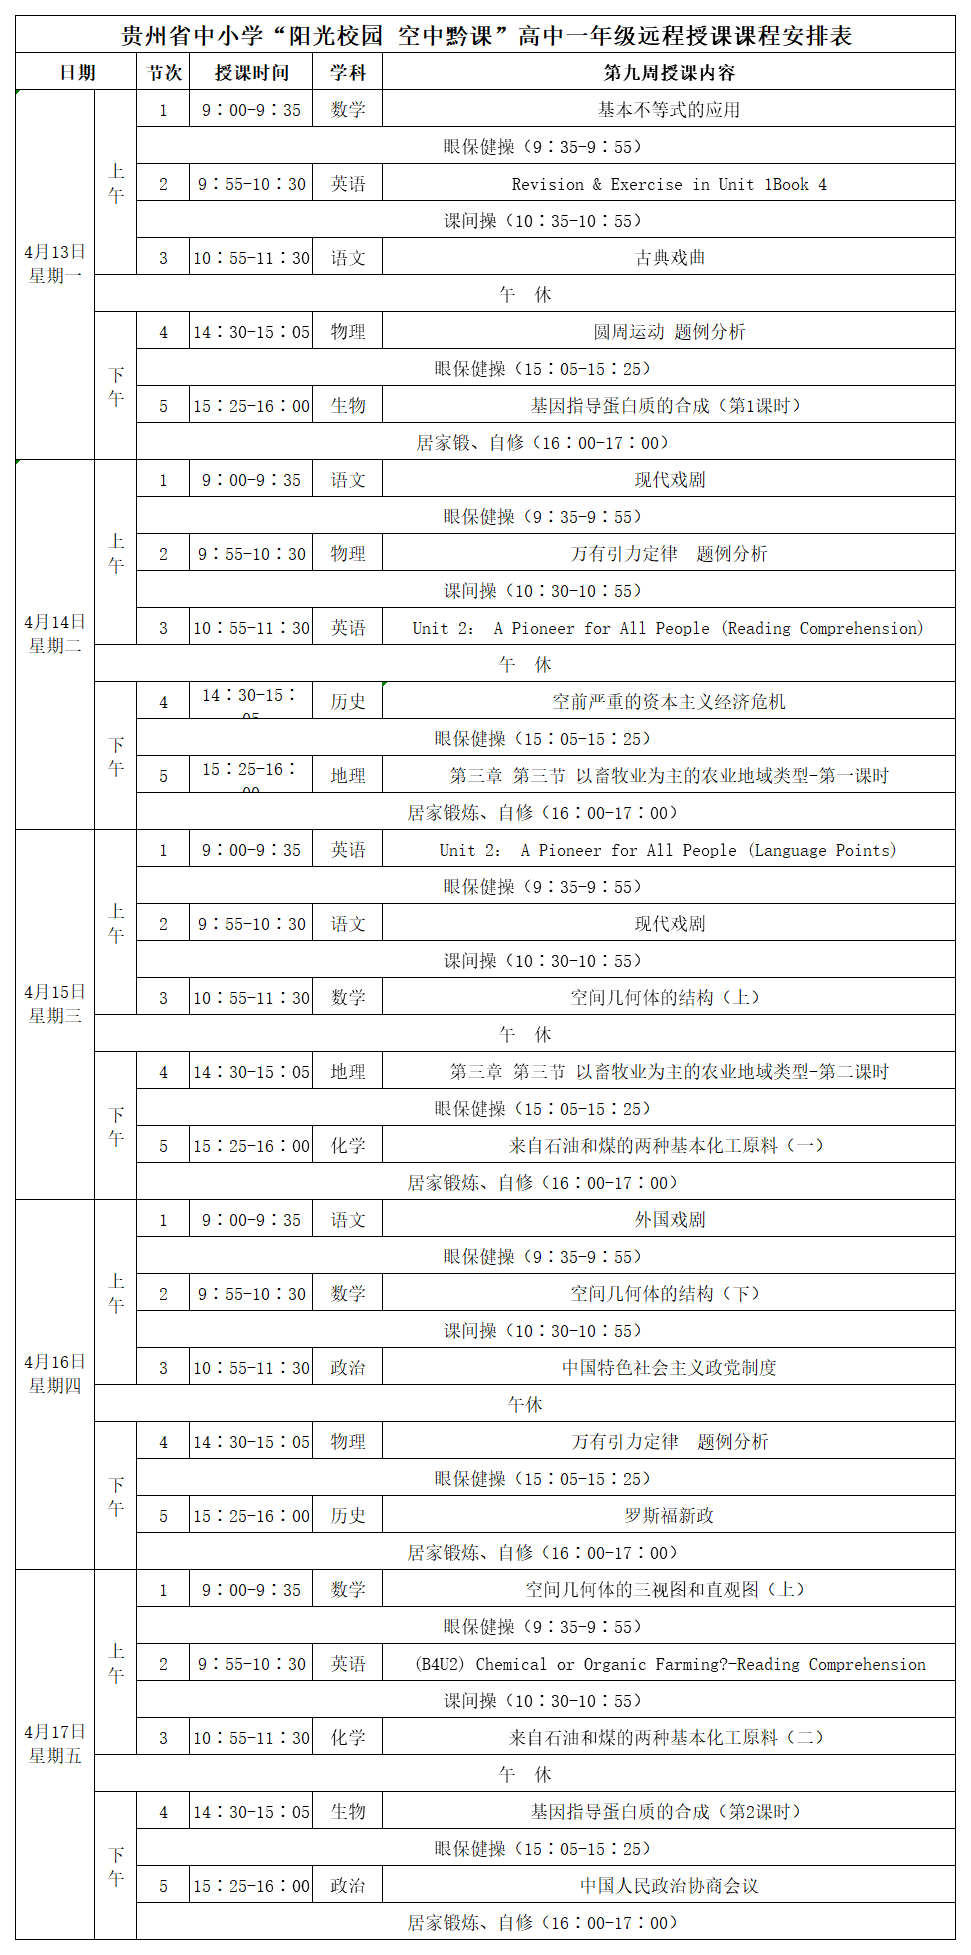 贵州中小学“空中课堂”课程表完整版公布（4月13日8